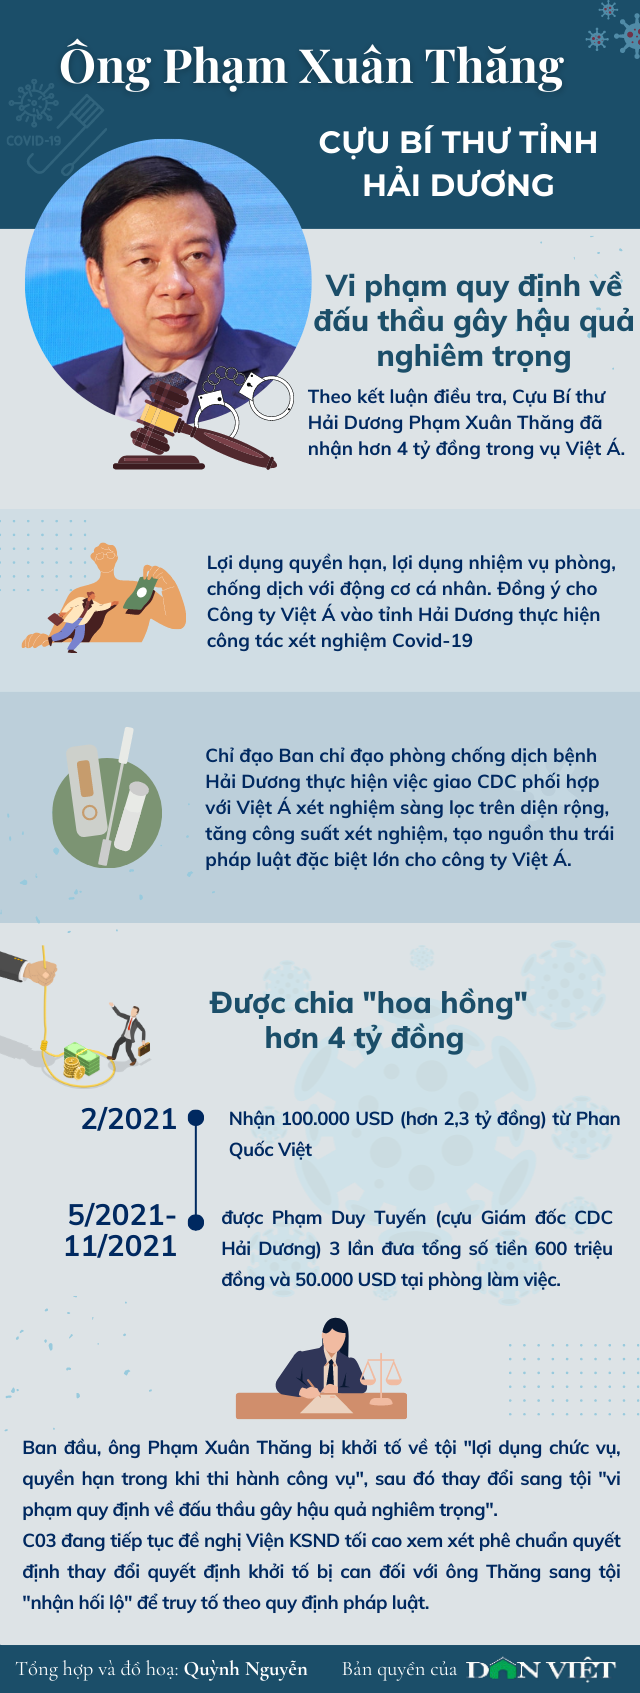 Infographic: Những vi phạm của 3 cựu Ủy viên Trung ương trong vụ án Việt Á - Ảnh 3.